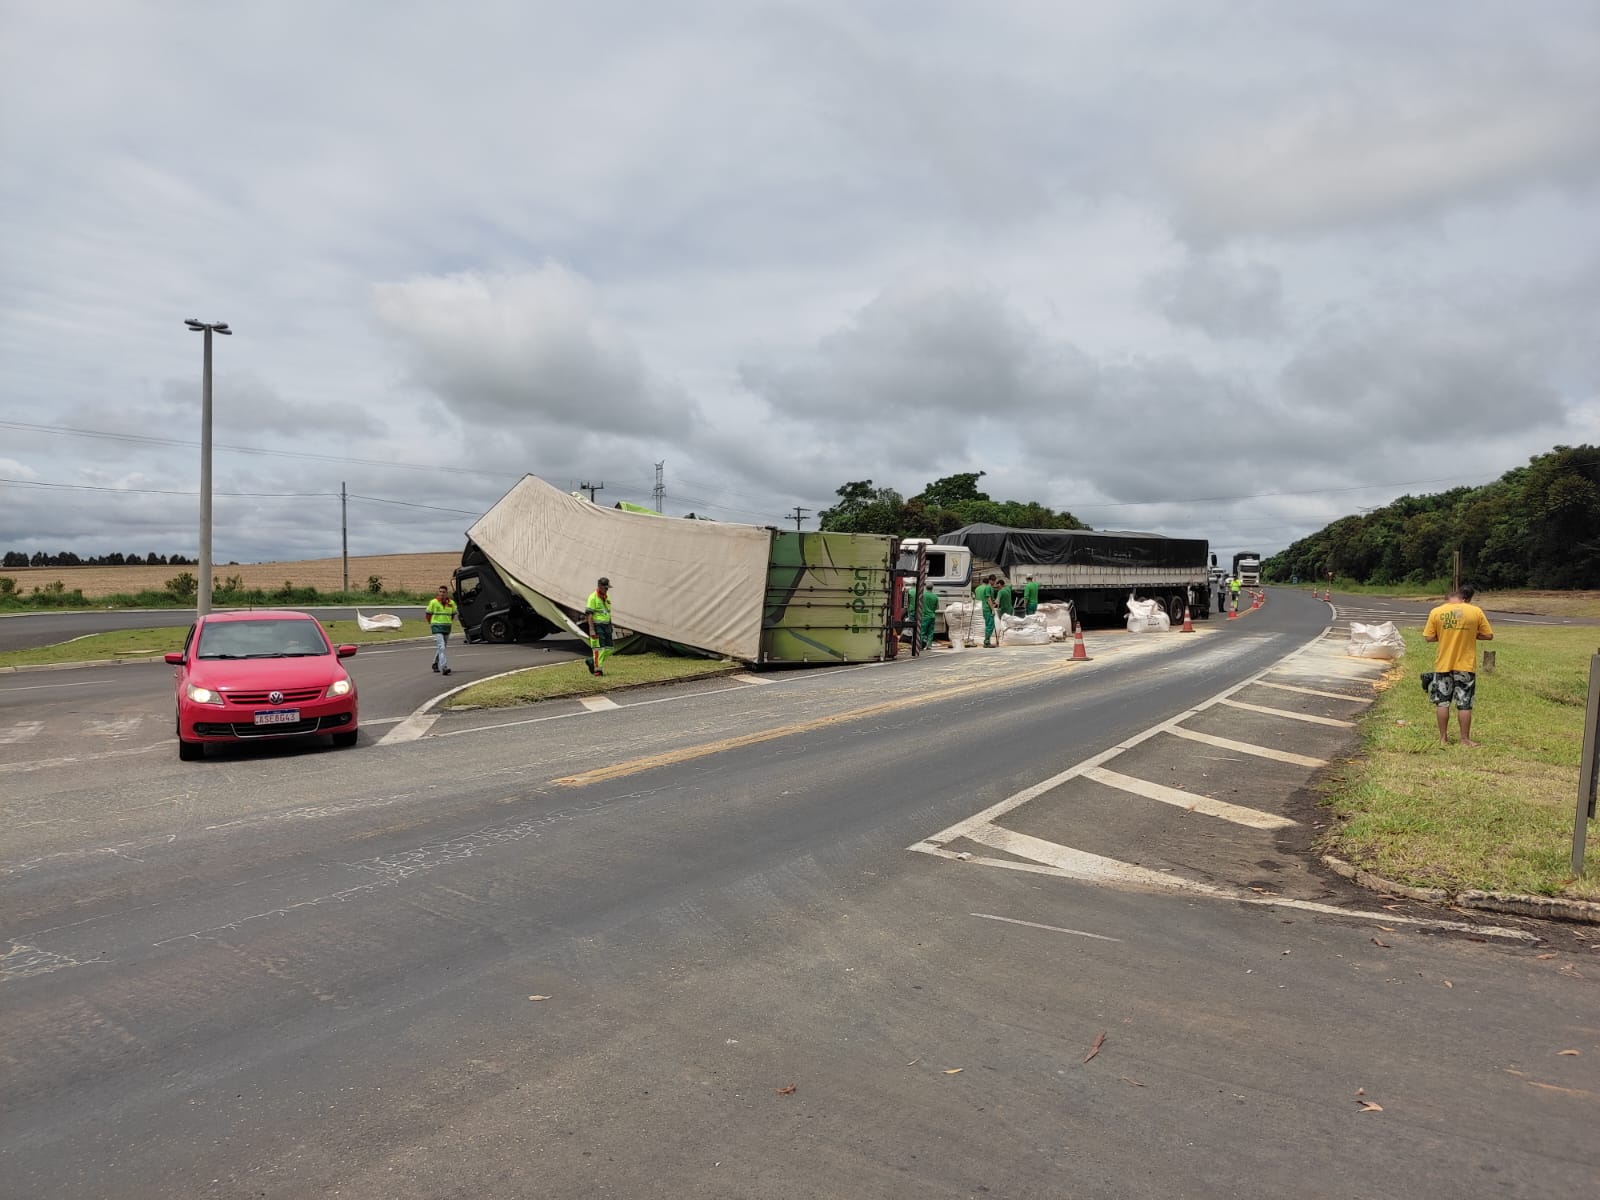 Acidente aconteceu em Ipiranga, nas proximidades da divisa com o município de Ponta Grossa